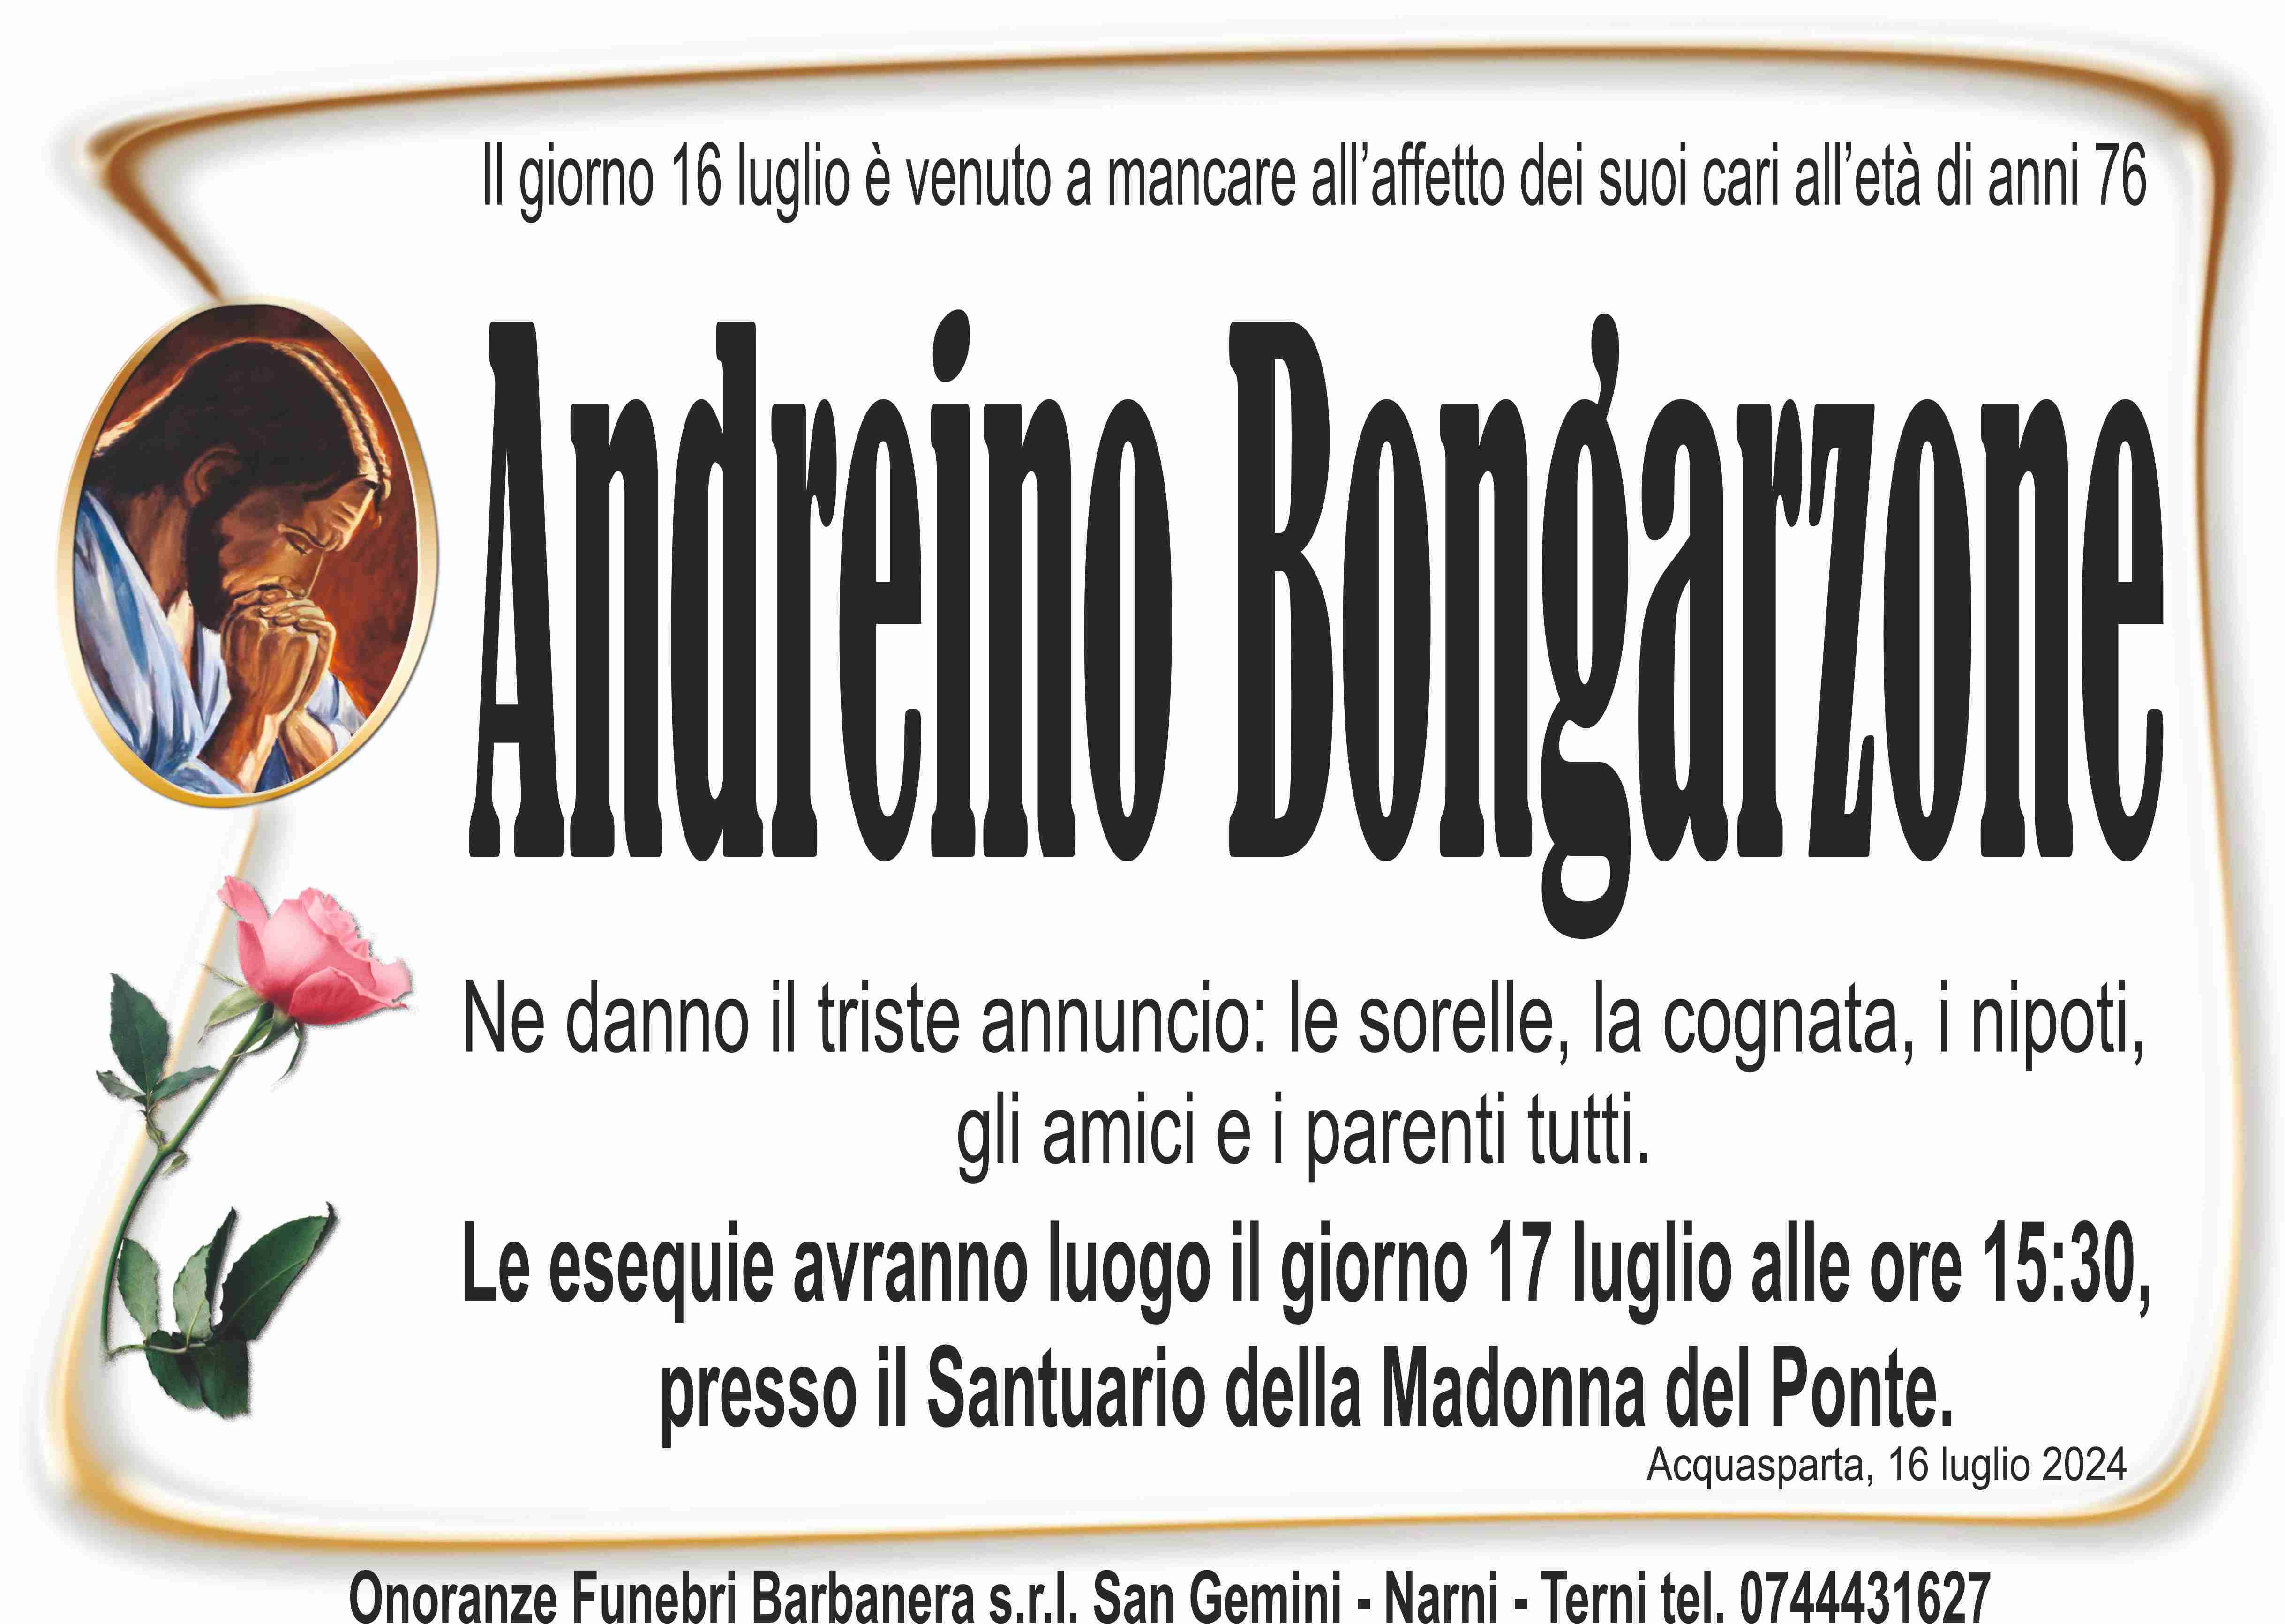 Andreino Bongarzone